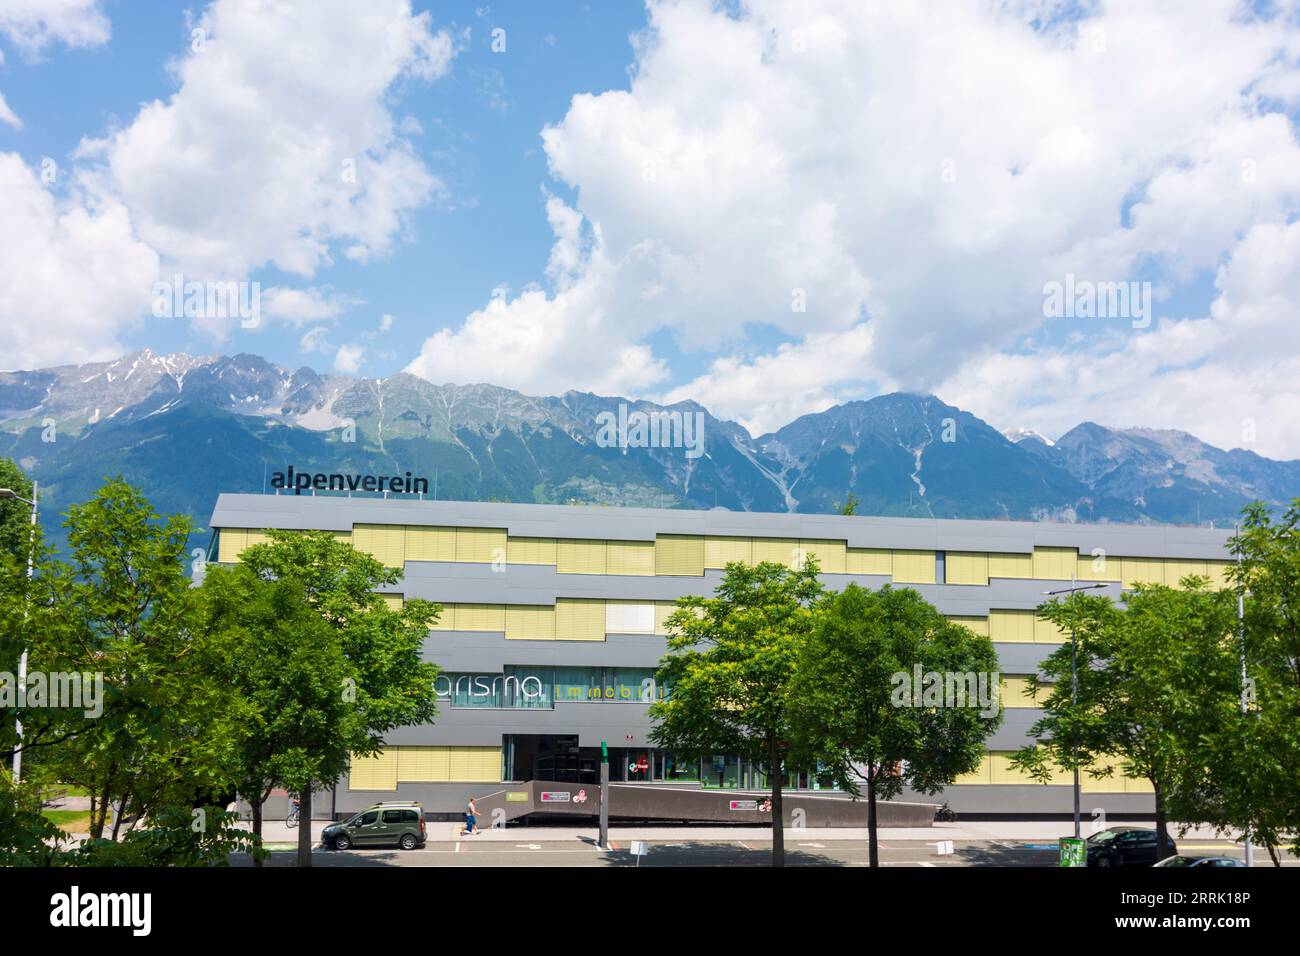 Innsbruck, edificio per uffici con sede ad Alpenverein Austria, montagne Nordkette nella regione di Innsbruck, Tirolo, Austria Foto Stock